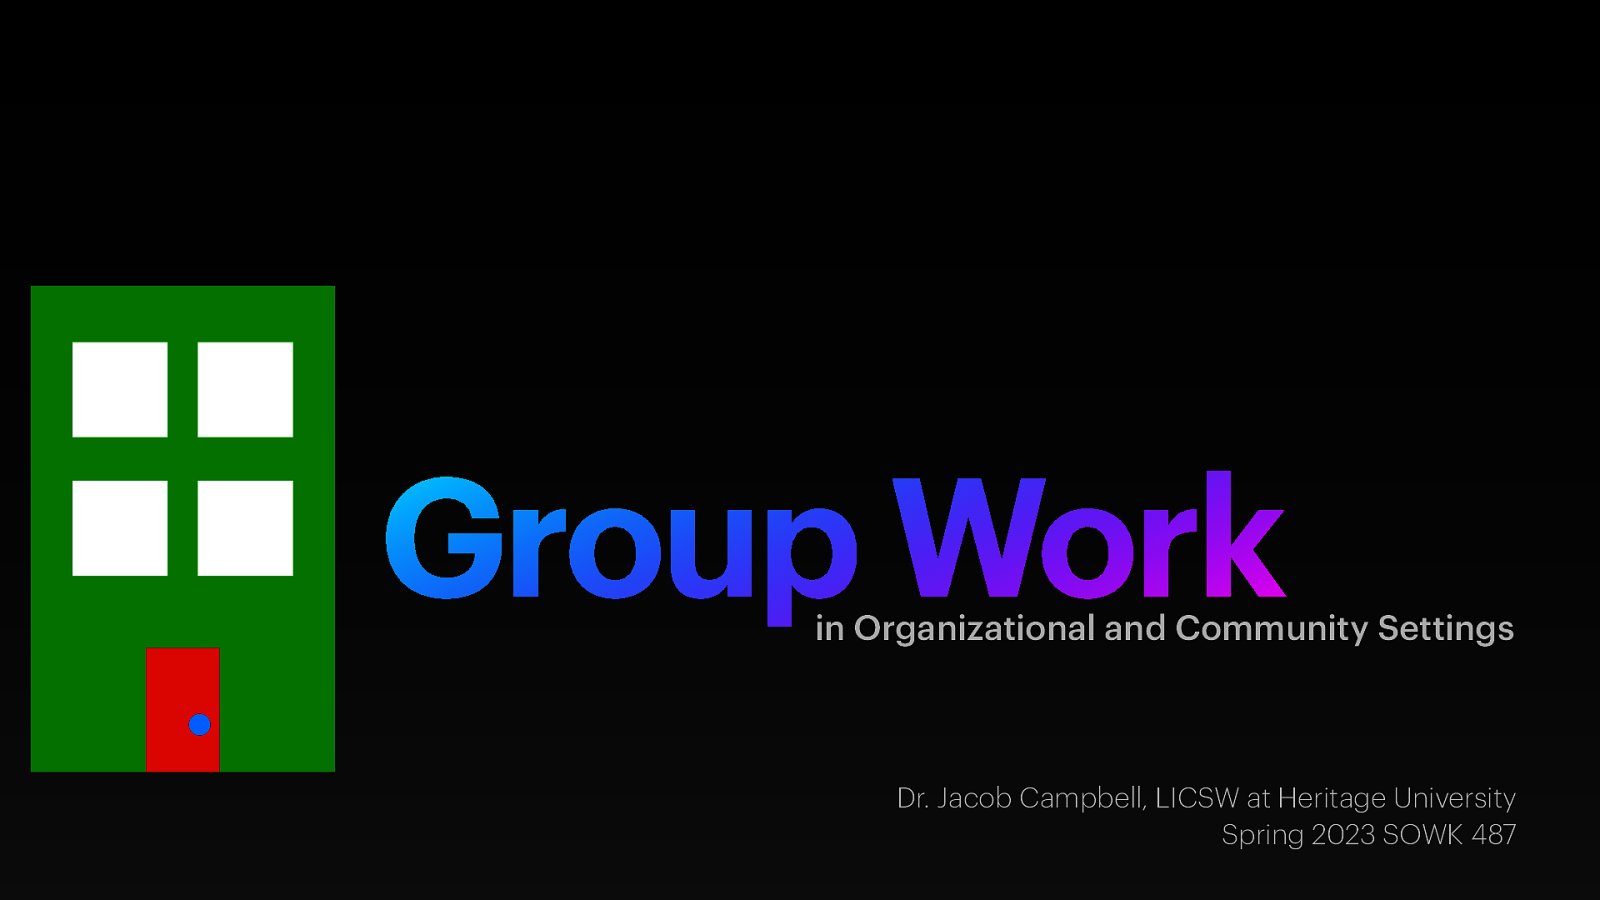 Spring 2023 SOWK 487 Week 14 - Interdisciplinary Teams: Group Work in Organizations and Community Settings